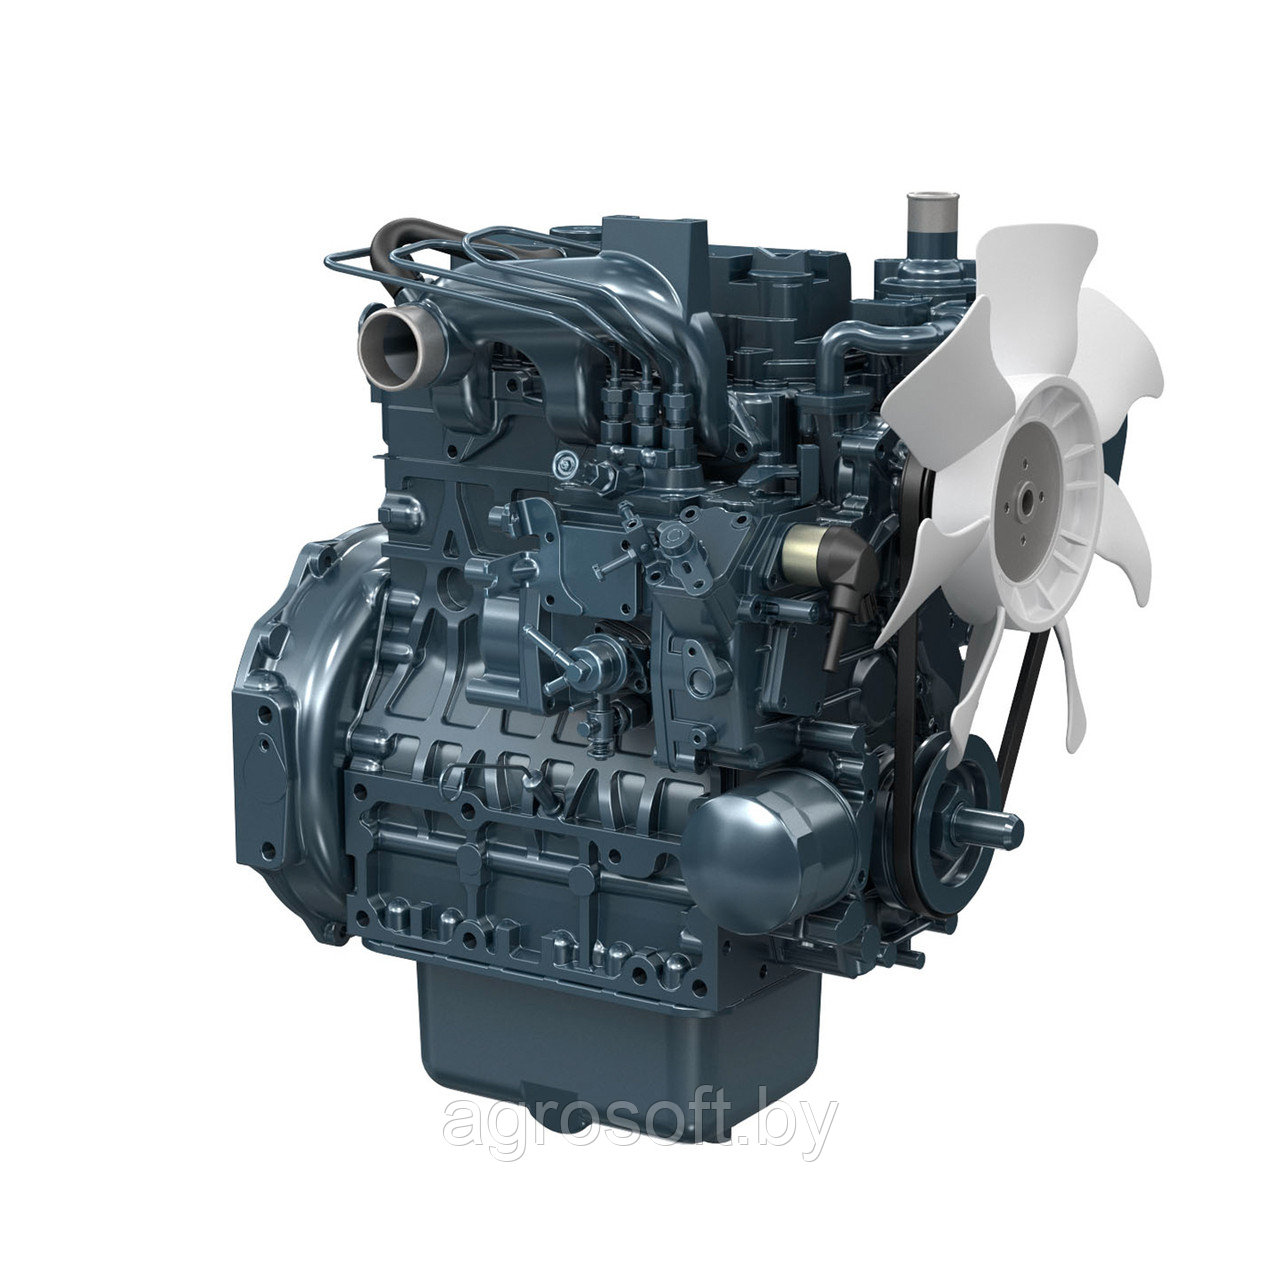 Ремонт дизельного двигателя Kubota D1503 M E3B